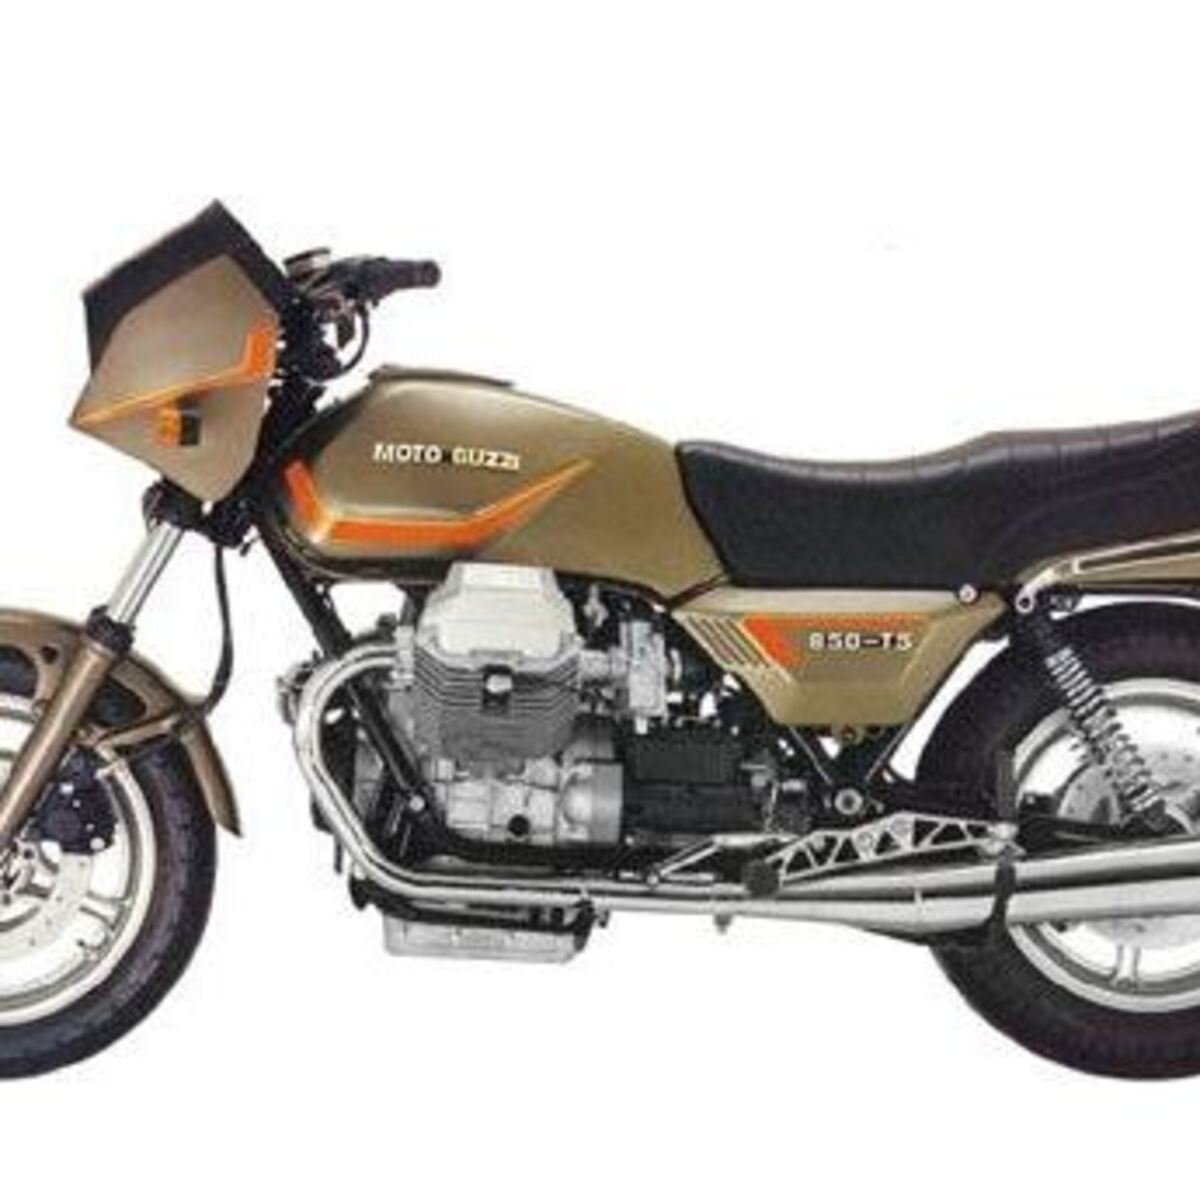 Moto Guzzi T5 850 (1983 - 86)